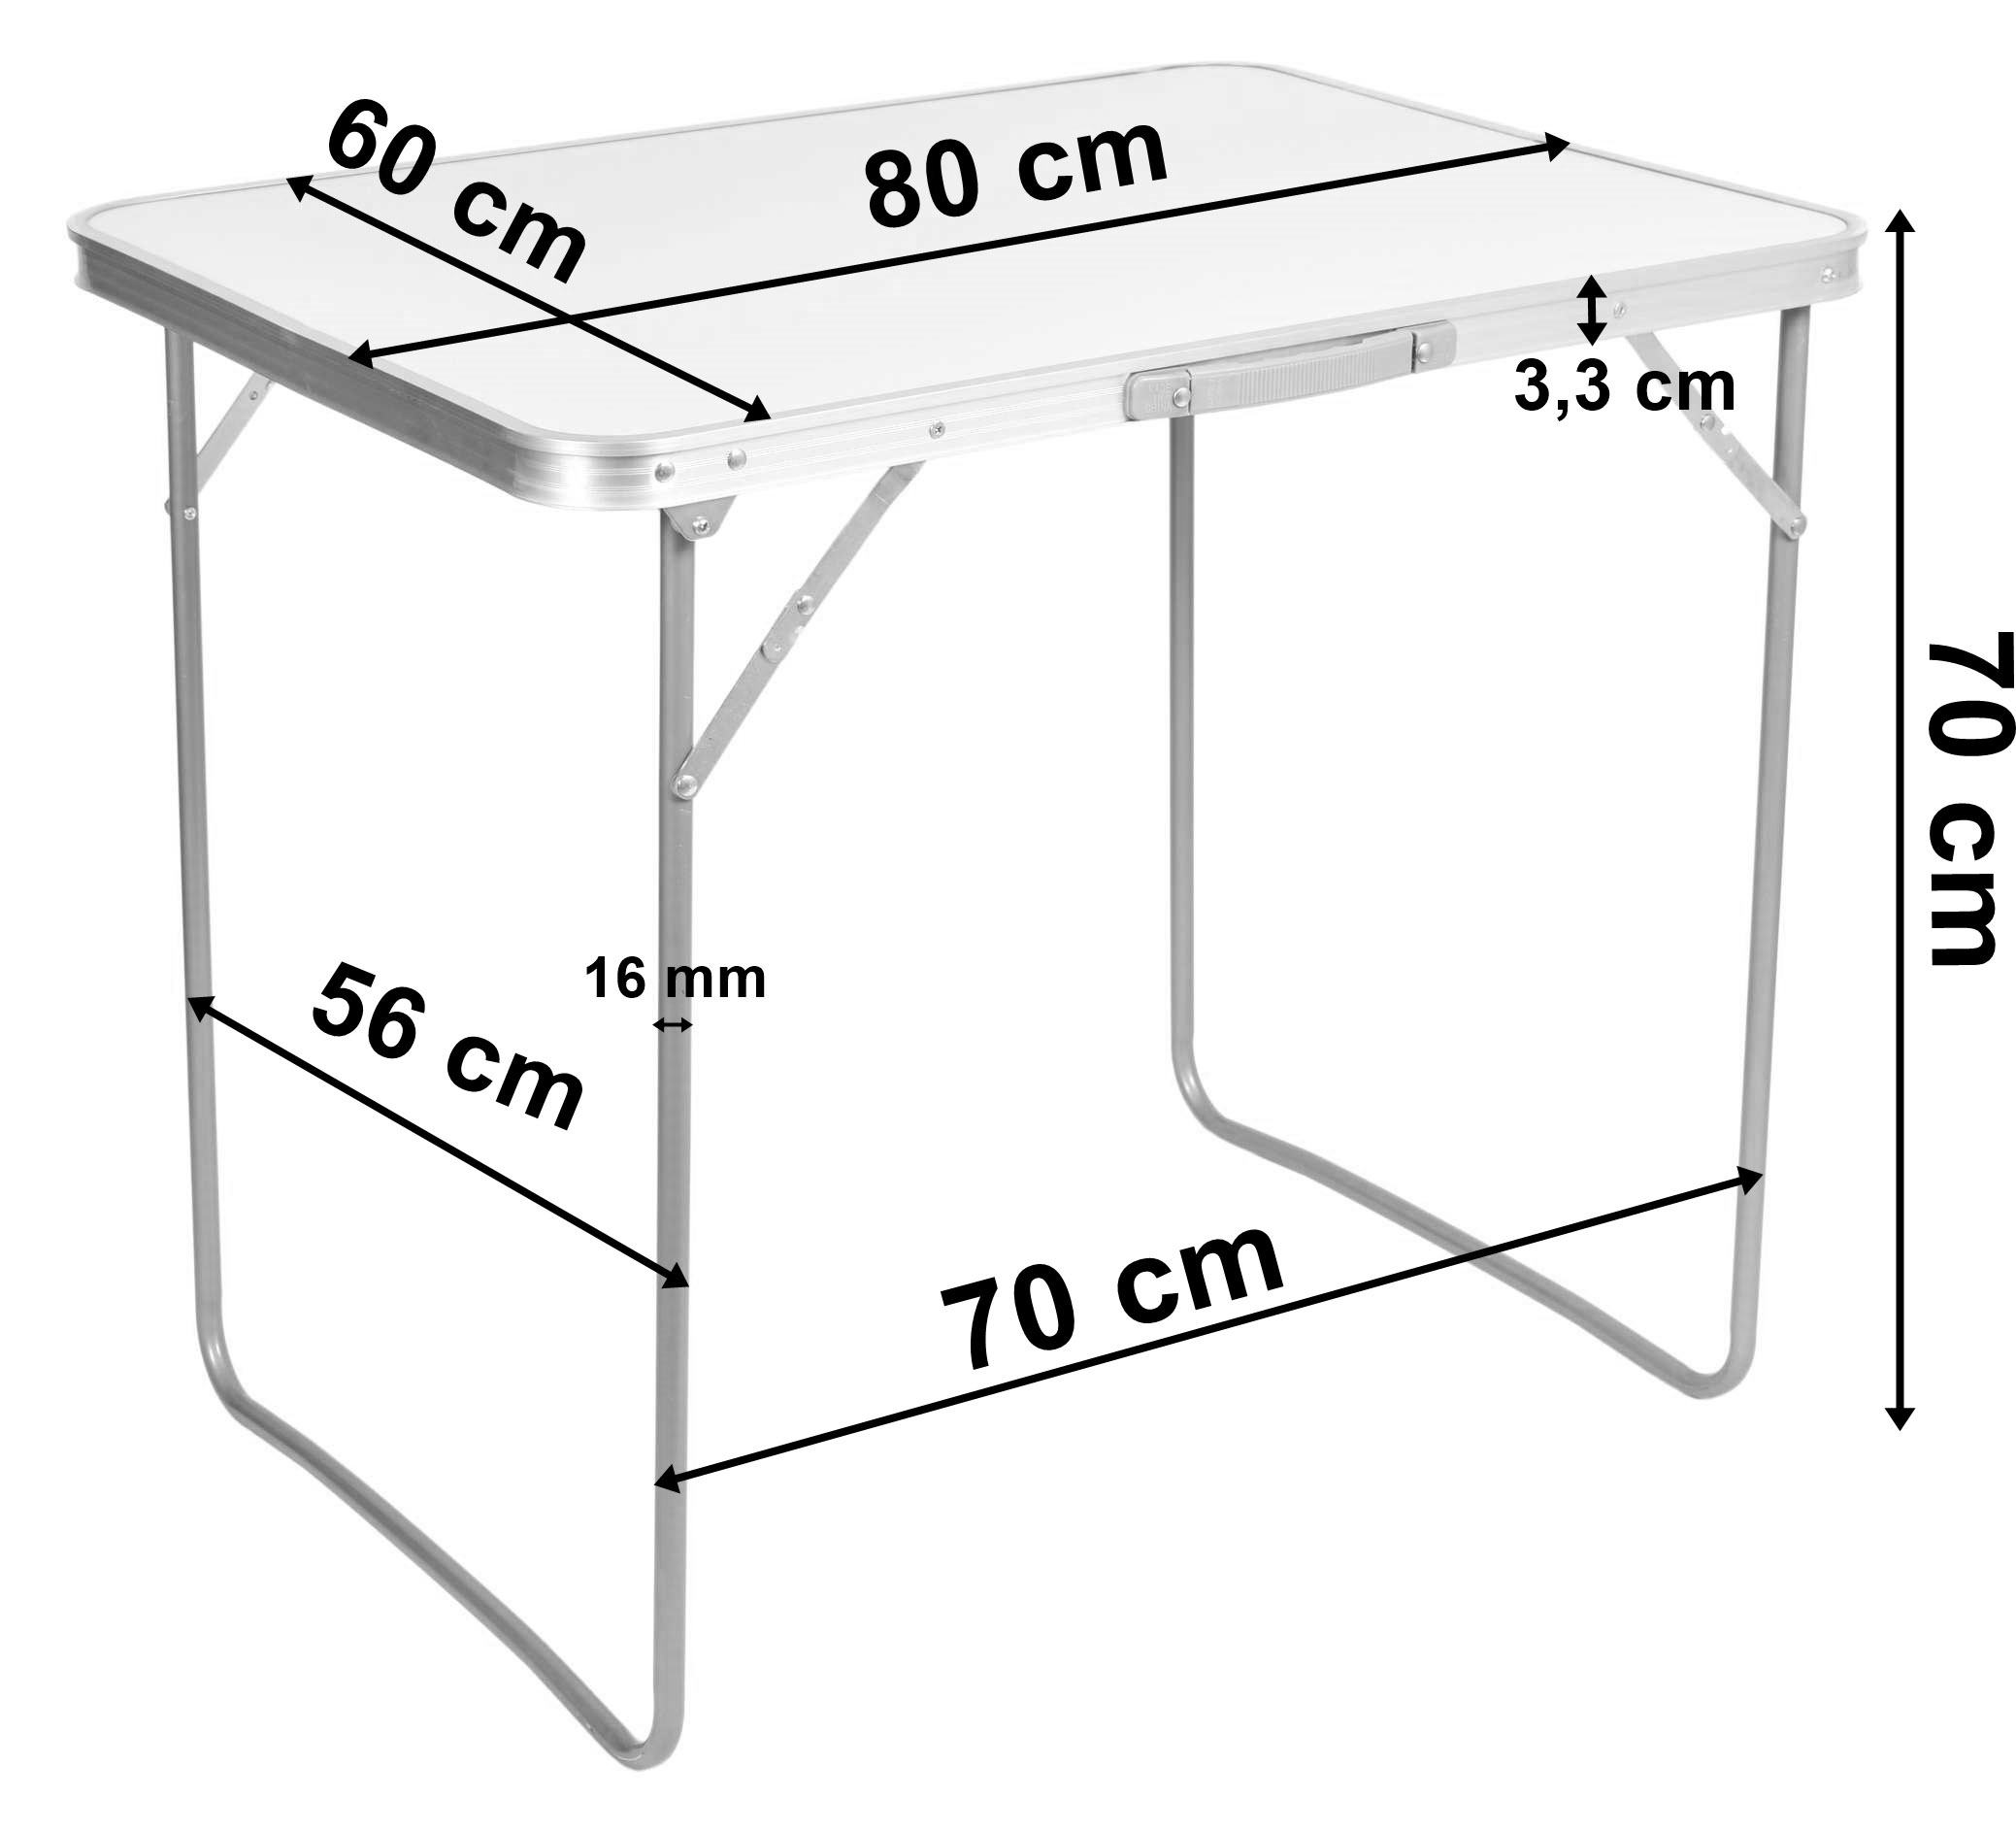 Stół turystyczny CORN kempingowy 80x60 cm biały